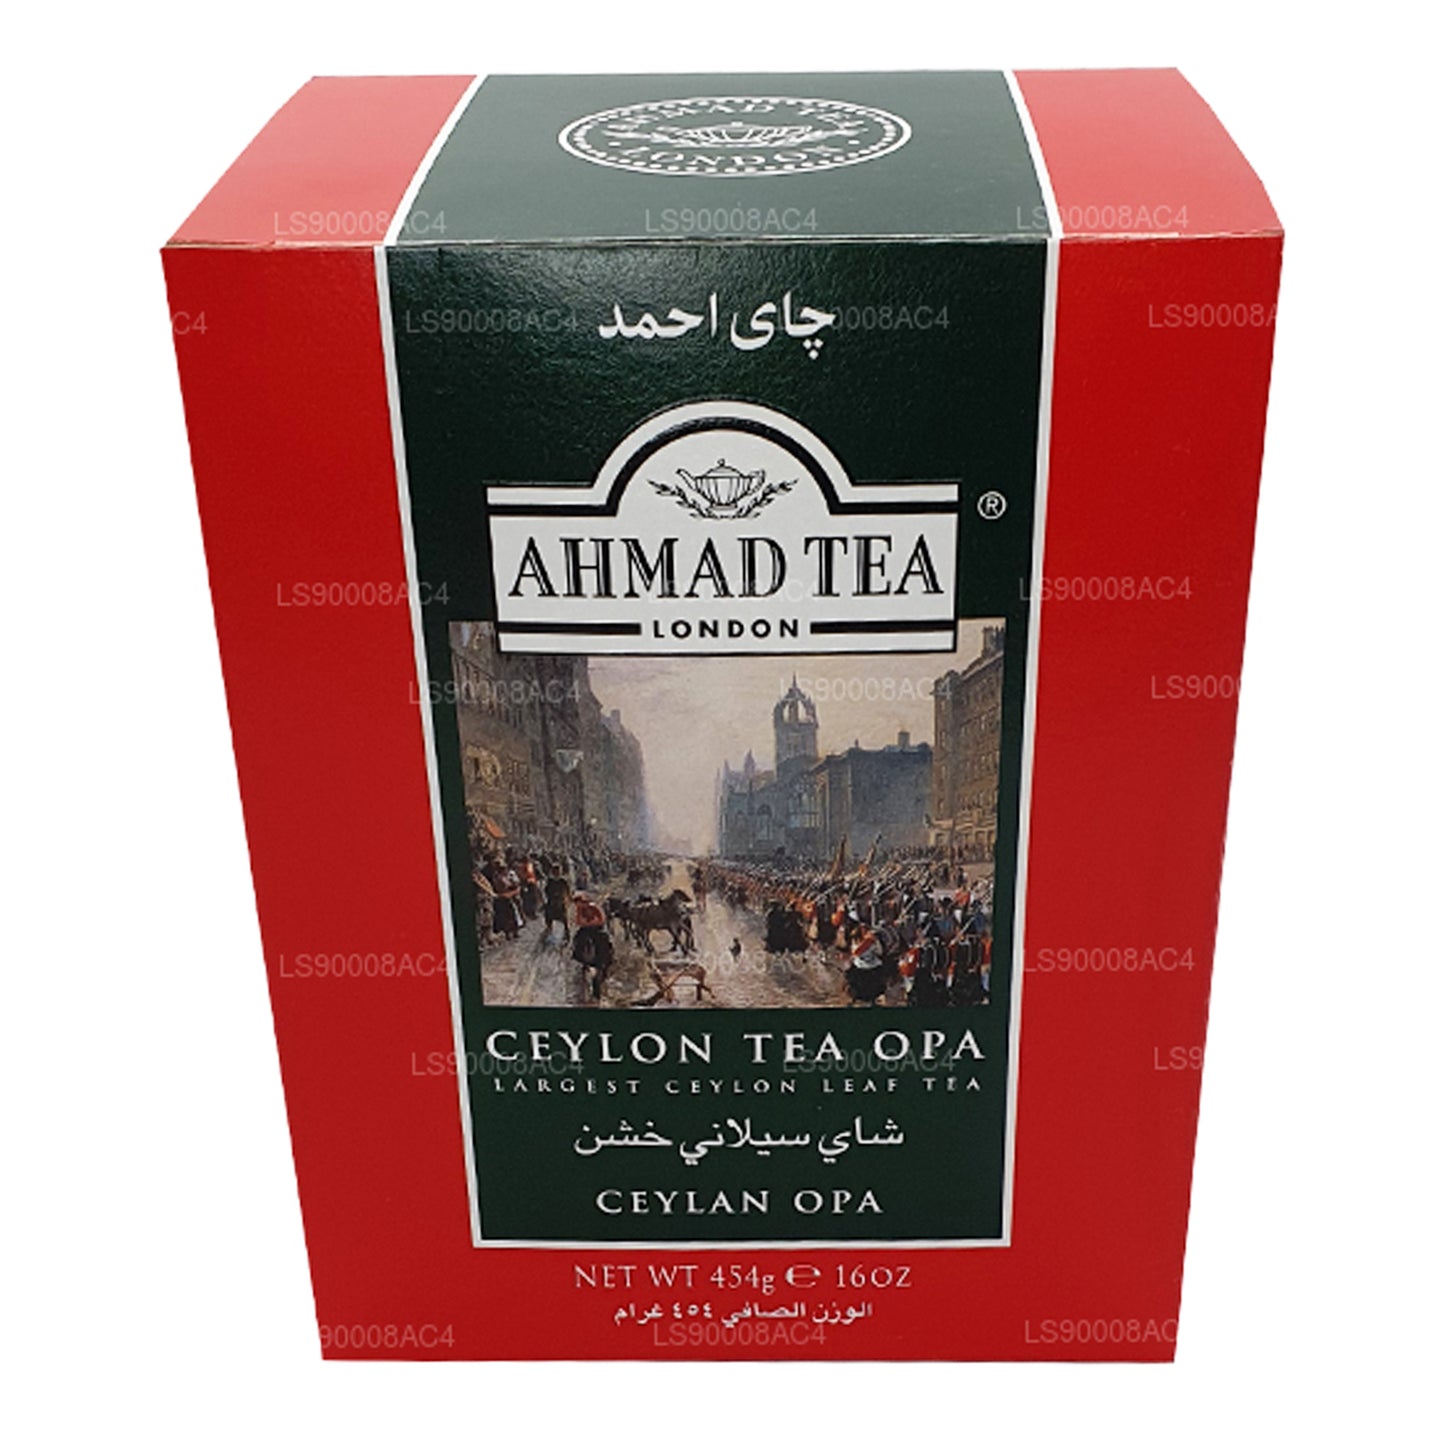 Ahmad Tea Ceylon Tea OPA, el té de hojas de Ceilán más grande (454 g)